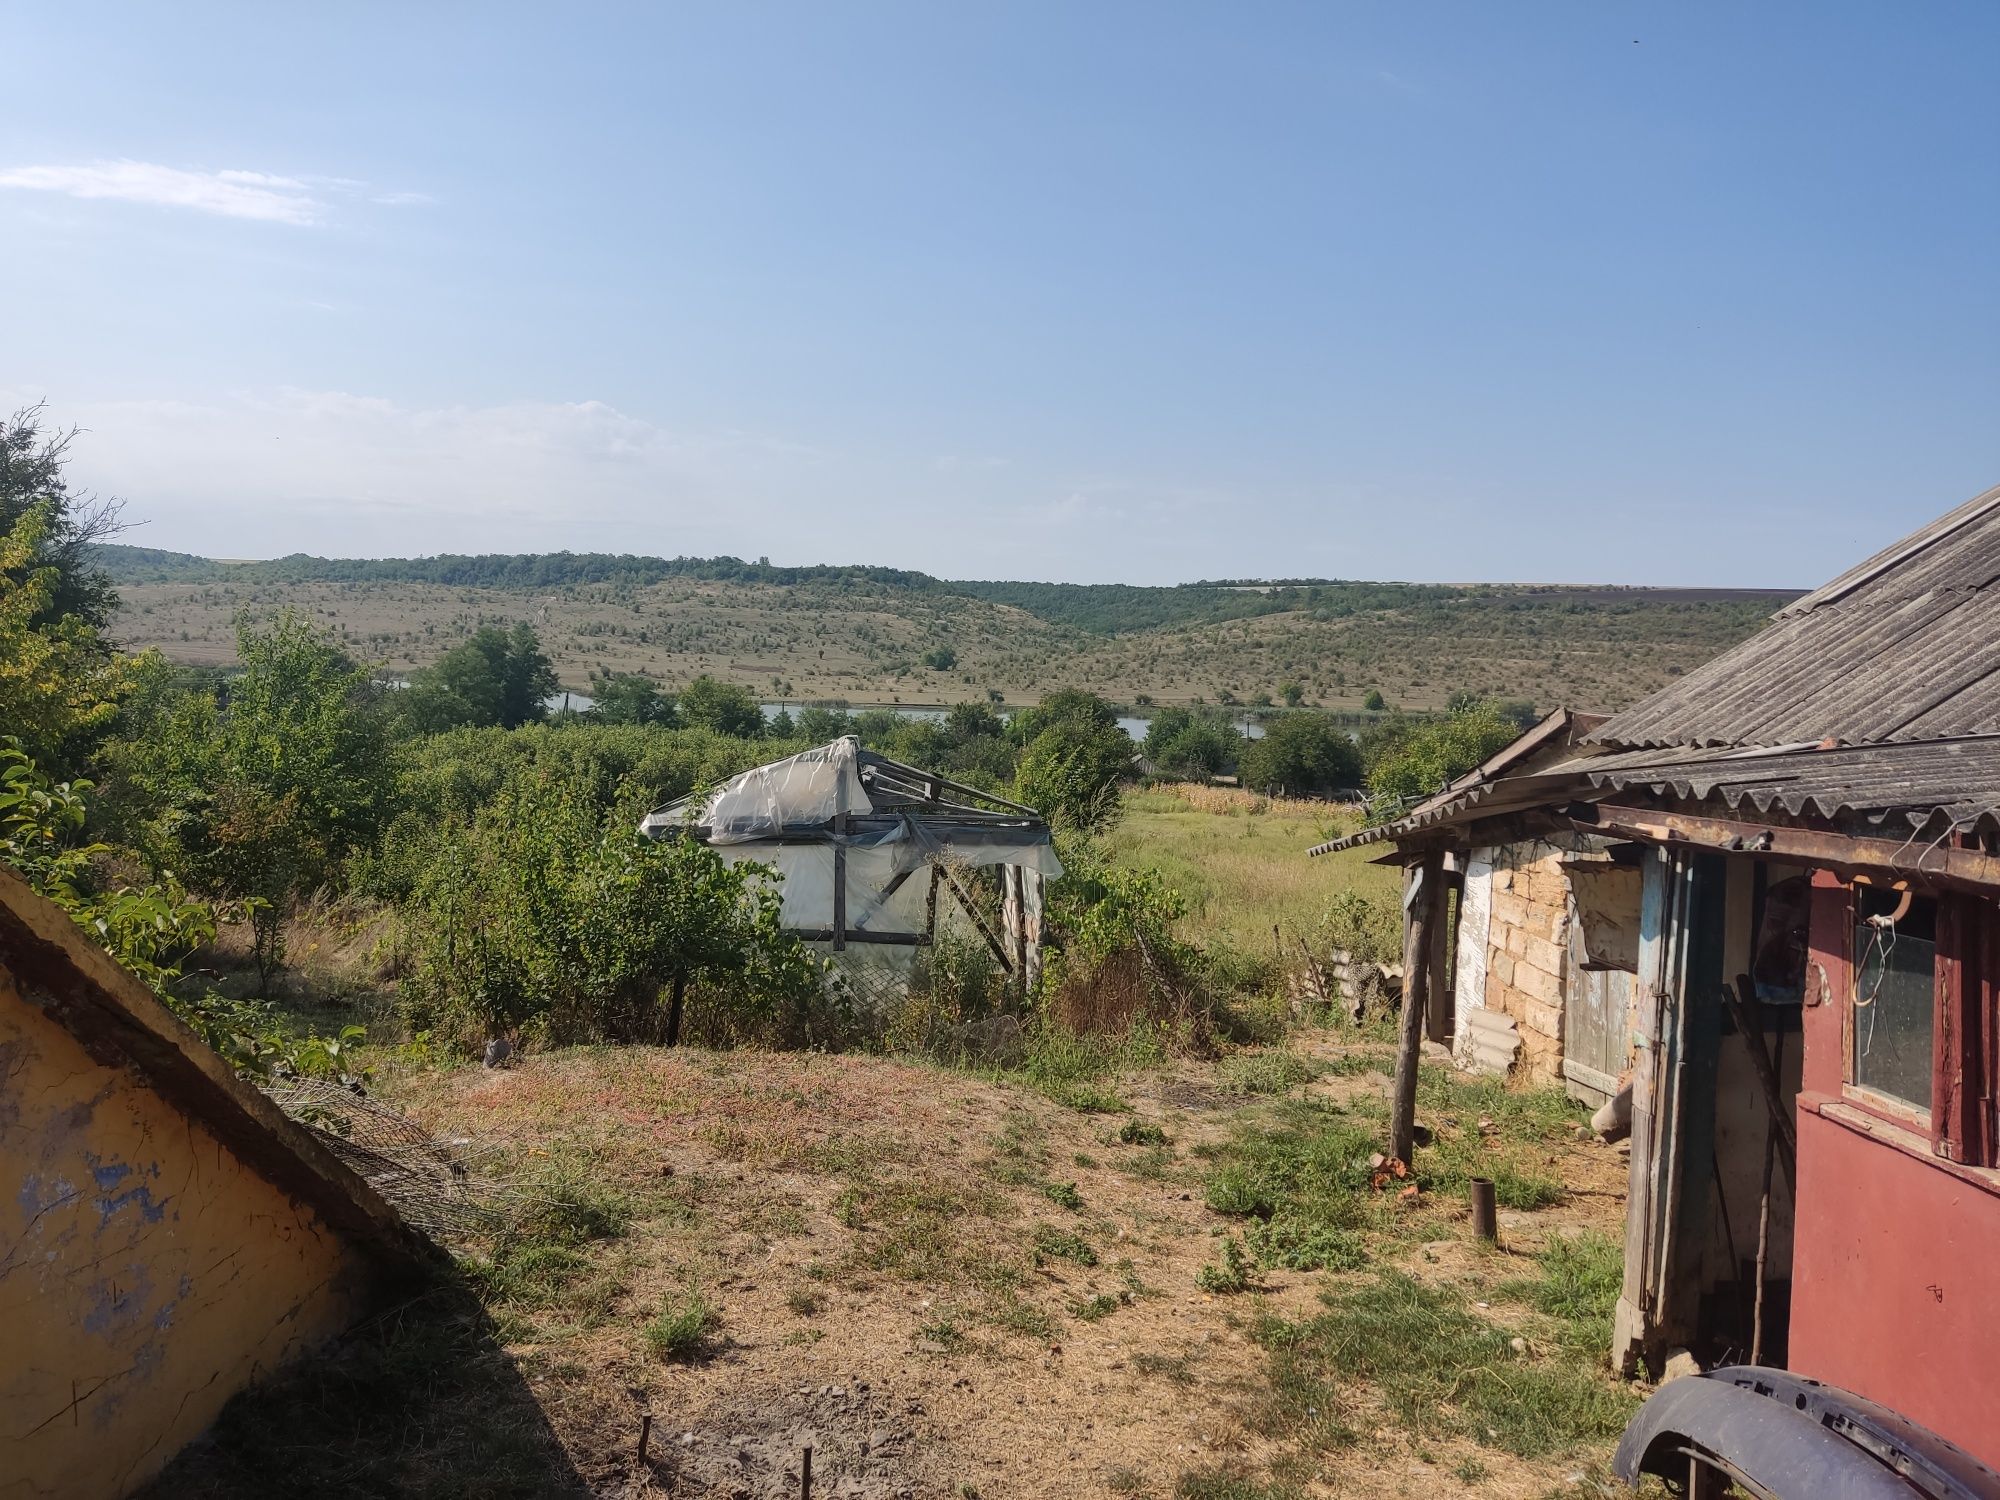 Продам дом в Одесской области